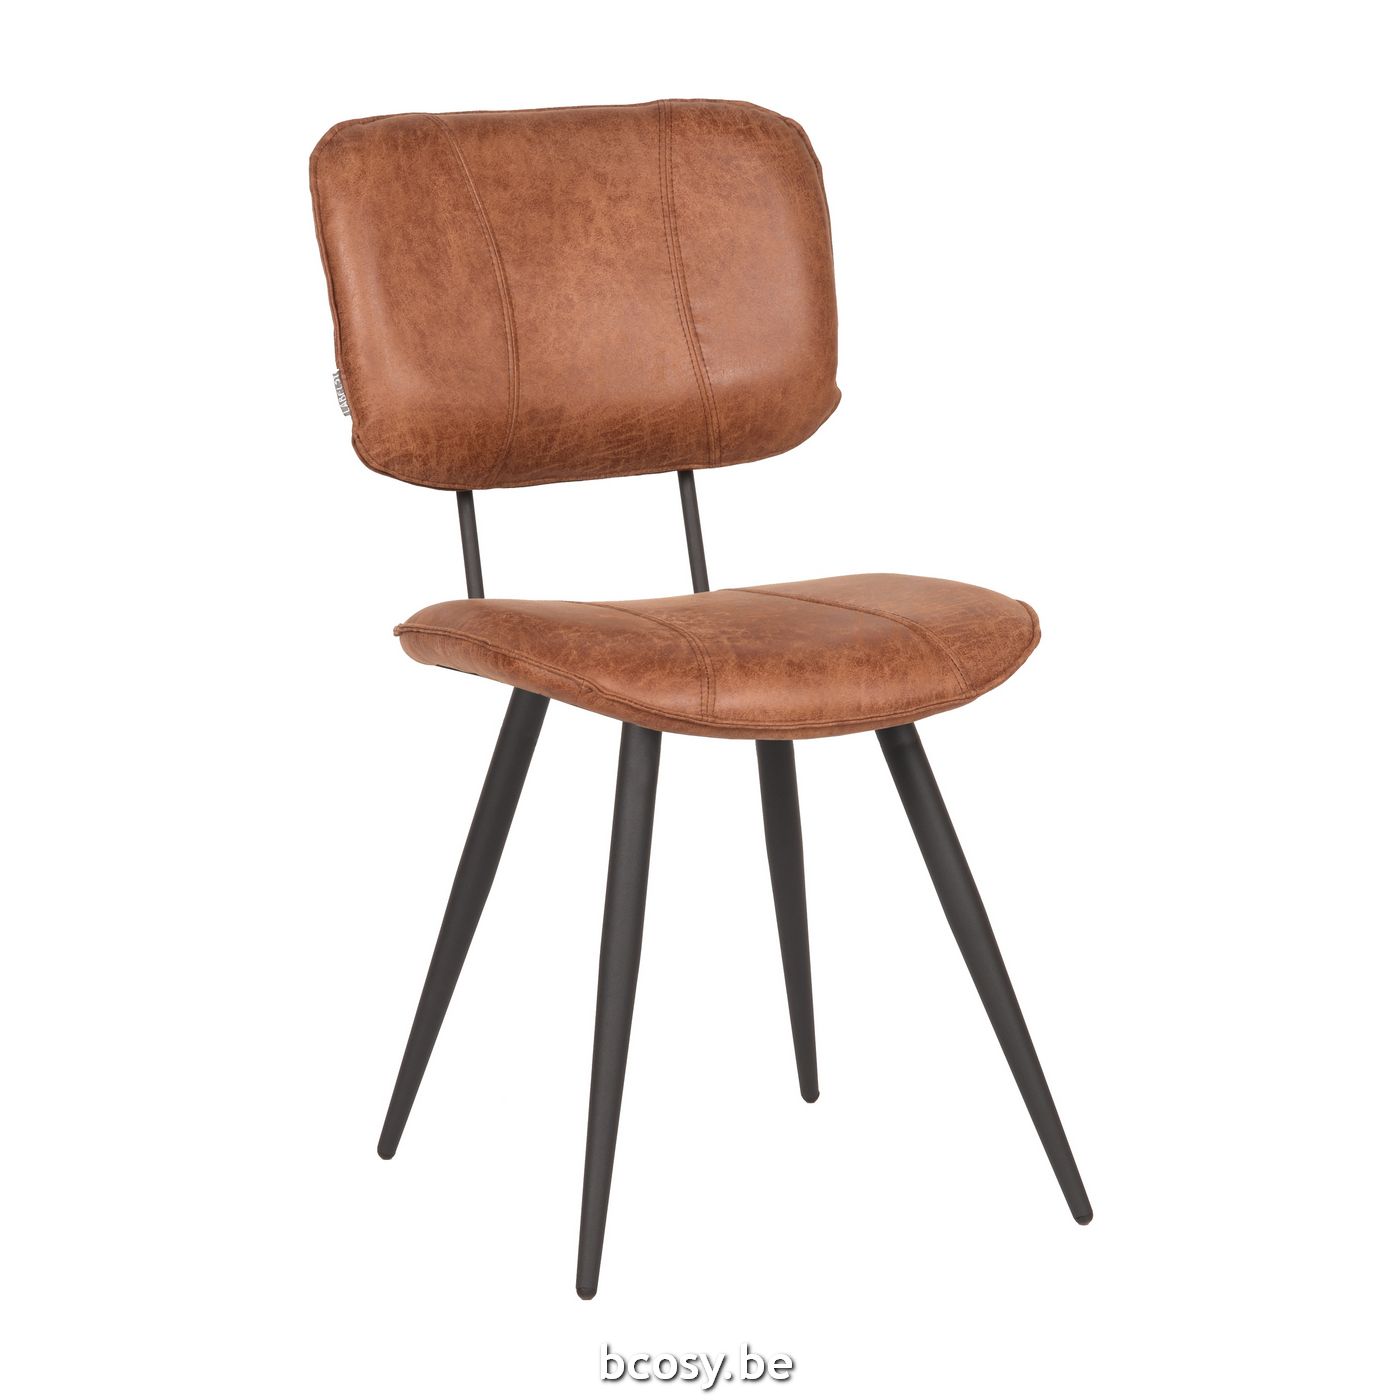 Heel schetsen ontmoeten LABEL51 Eetkamerstoel Fos Cognac Leder LABEL51 IH-50.040 <span  style="font-size: 6pt;"> stoelen eetkamerstoelen eethoekstoelen  eettafelstoelen eetstoelen chaises de repas dining chairs stuhl stuehle  </span> - Stoelen Krukken - BCosy.be Lifestyle ...